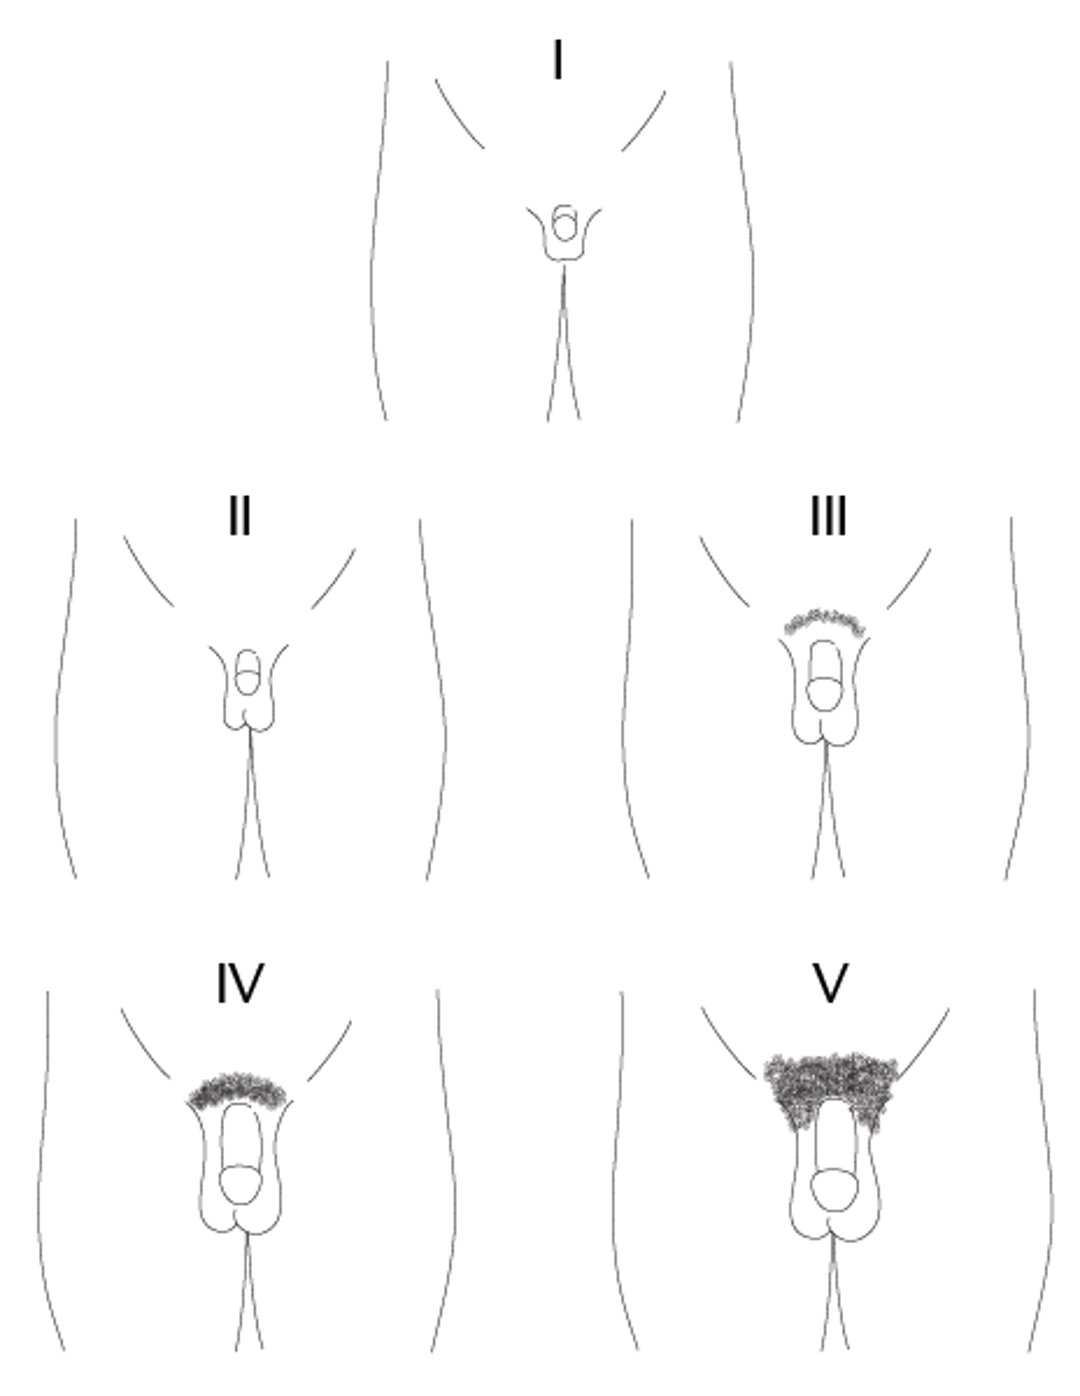 Rappresentazione schematica degli stadi di Tanner, da I a V, della maturazione del pene nei ragazzi